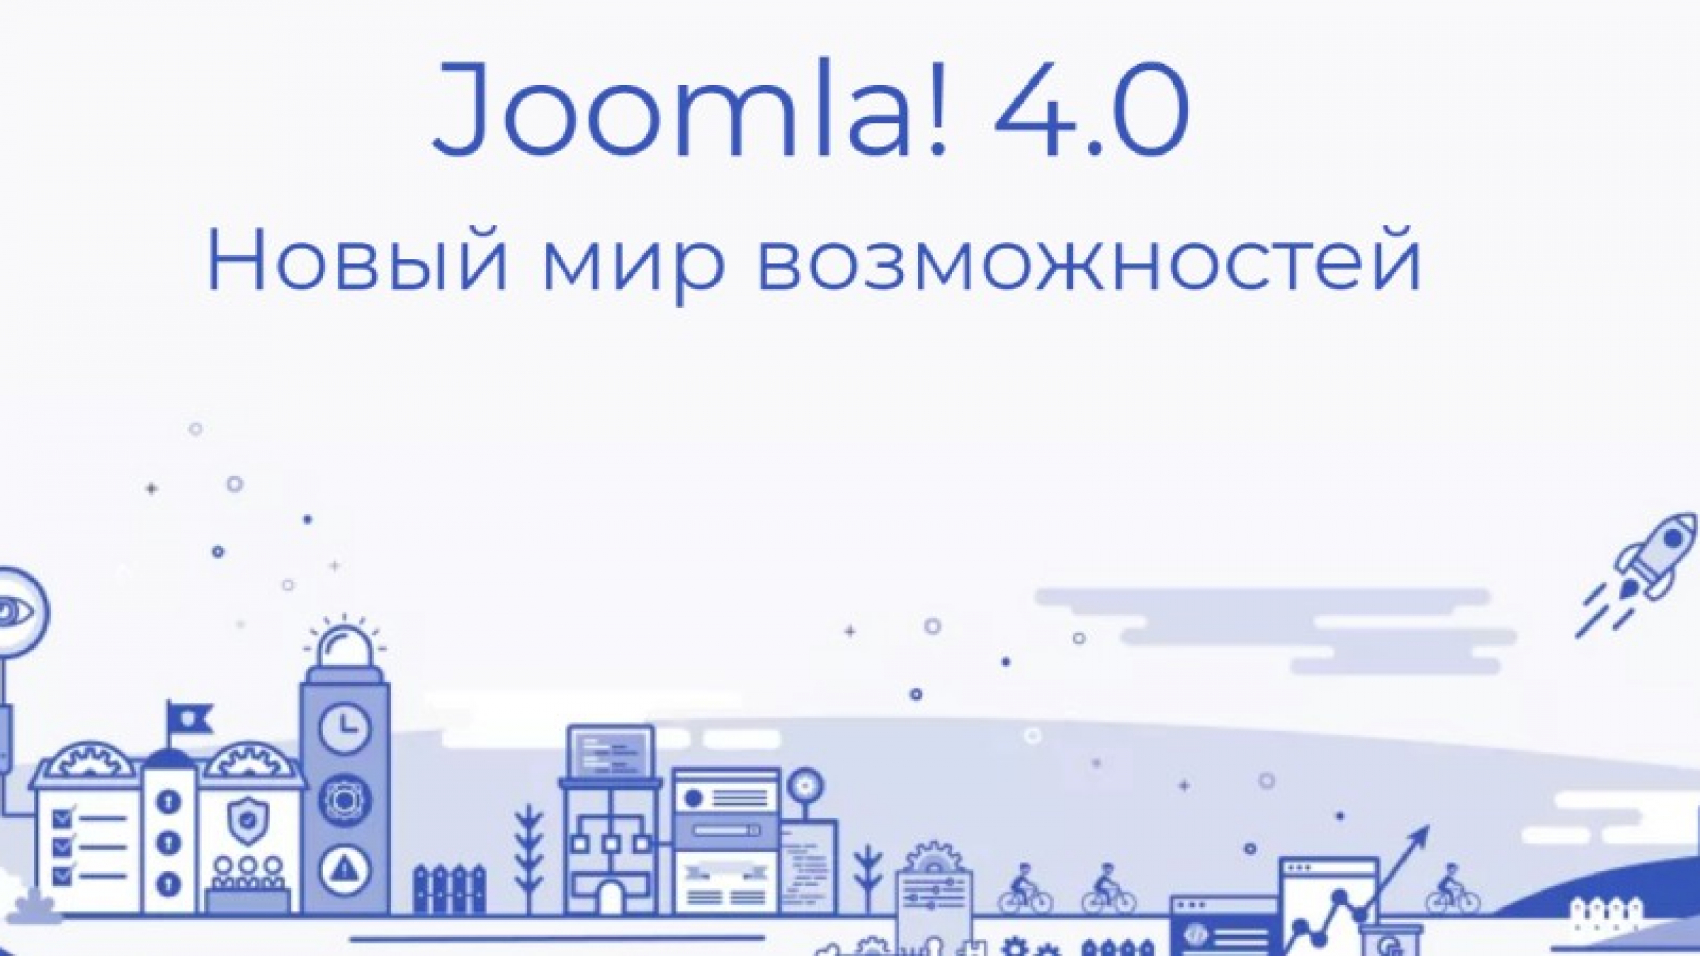 Вышла новая версия CMS Joomla 4.0